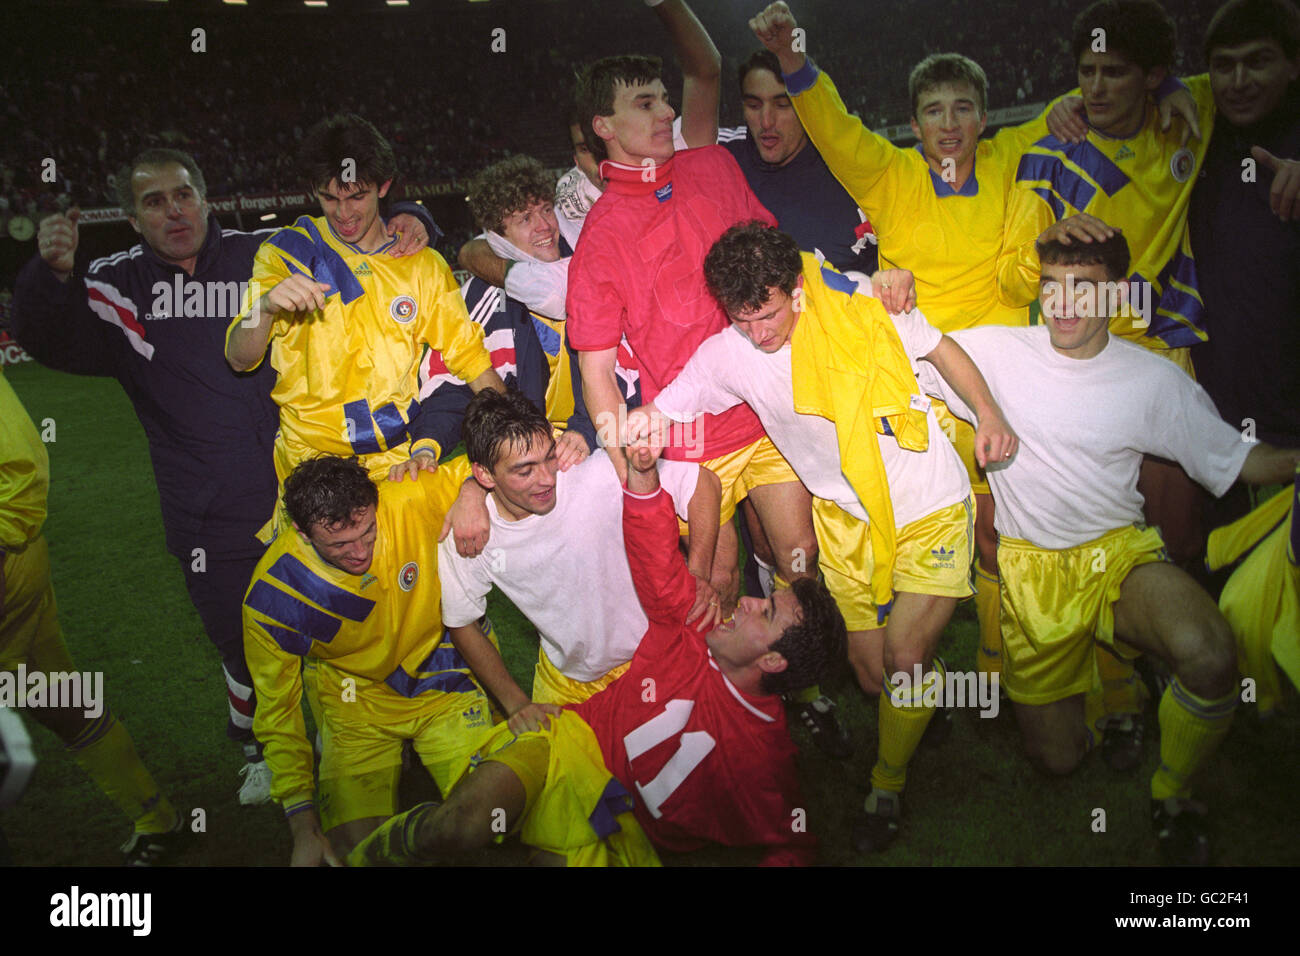 Football - coupe du monde USA 1994 qualificateur - Groupe trois - pays de Galles / Roumanie - Stade national.ROUMANIE CÉLÉBRER APRÈS LA VICTOIRE PAYS DE GALLES V ROUMANIE Banque D'Images